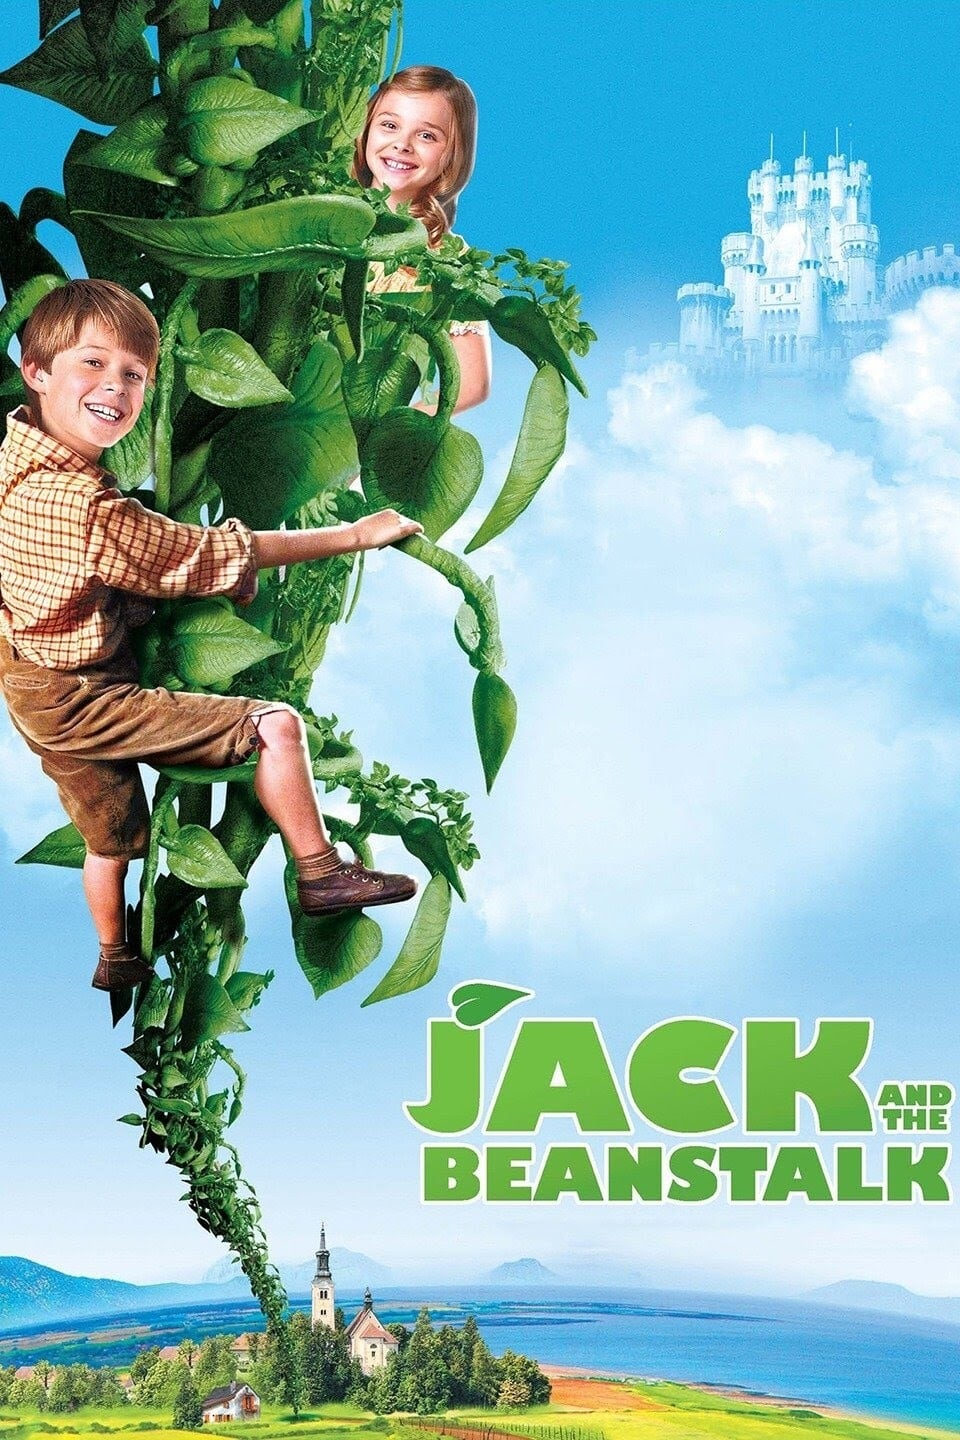 دانلود صوت دوبله فیلم Jack and the Beanstalk